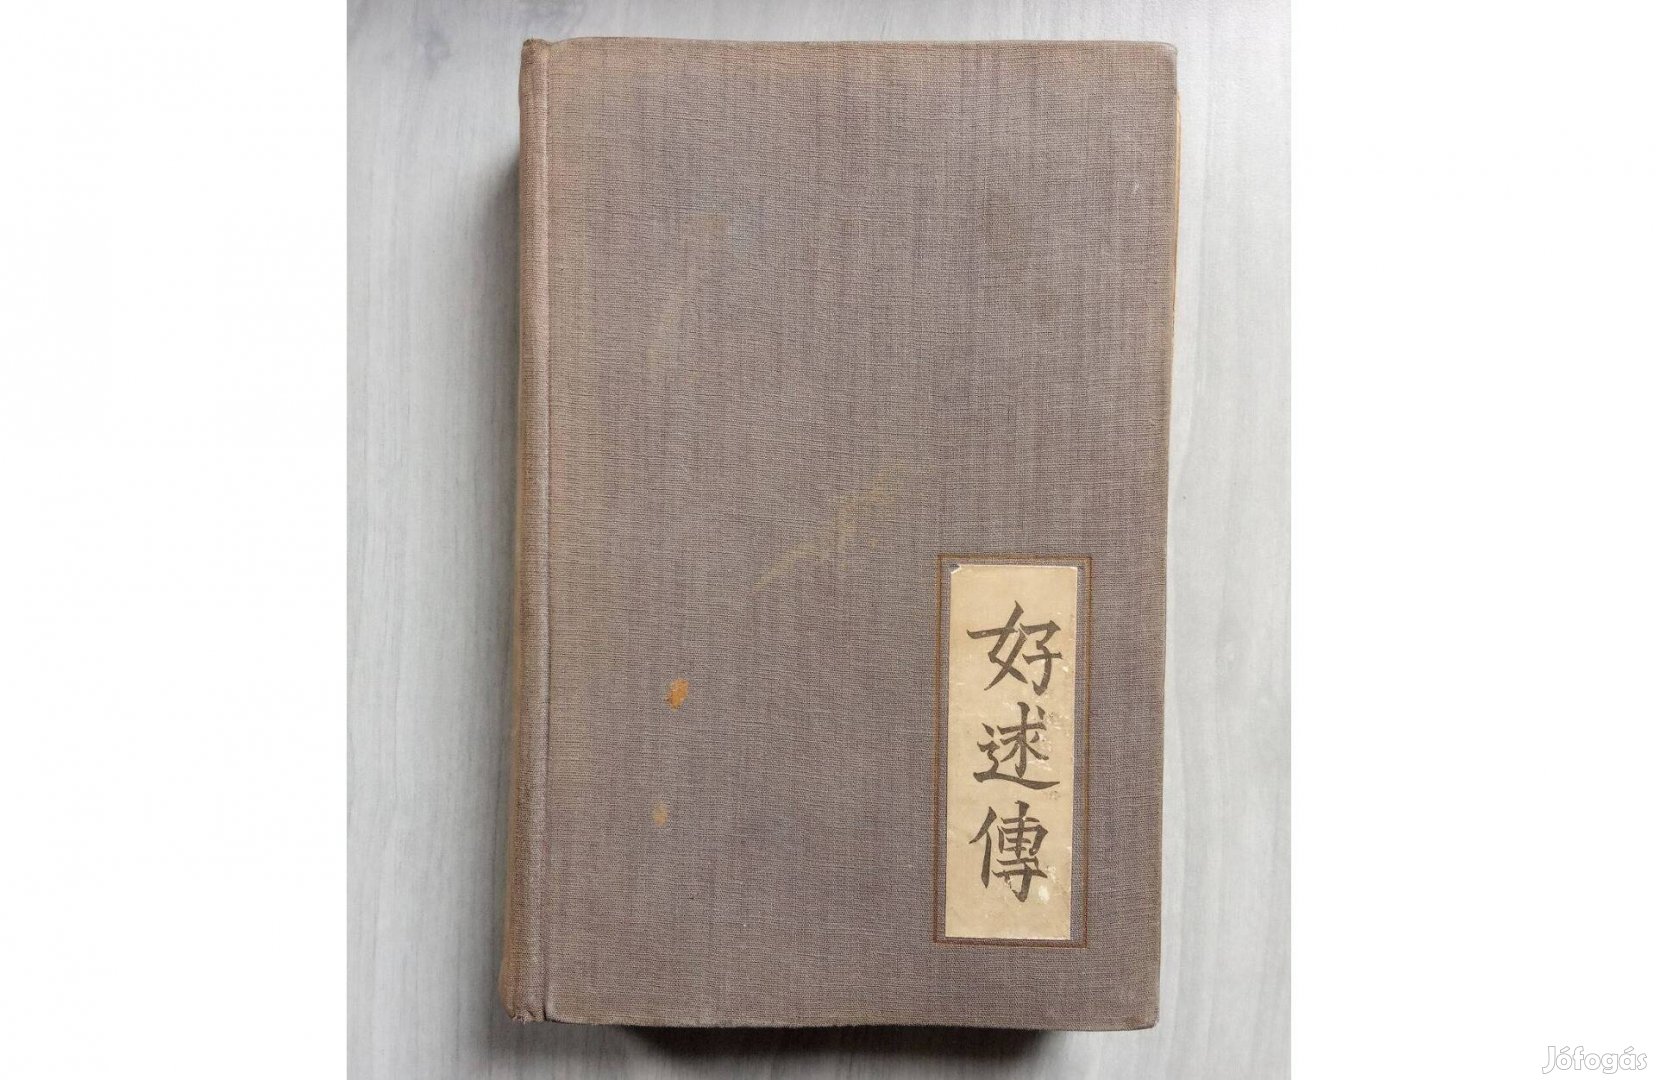 Kínai regény Virágos gyertyák avagy egy jó házasság története